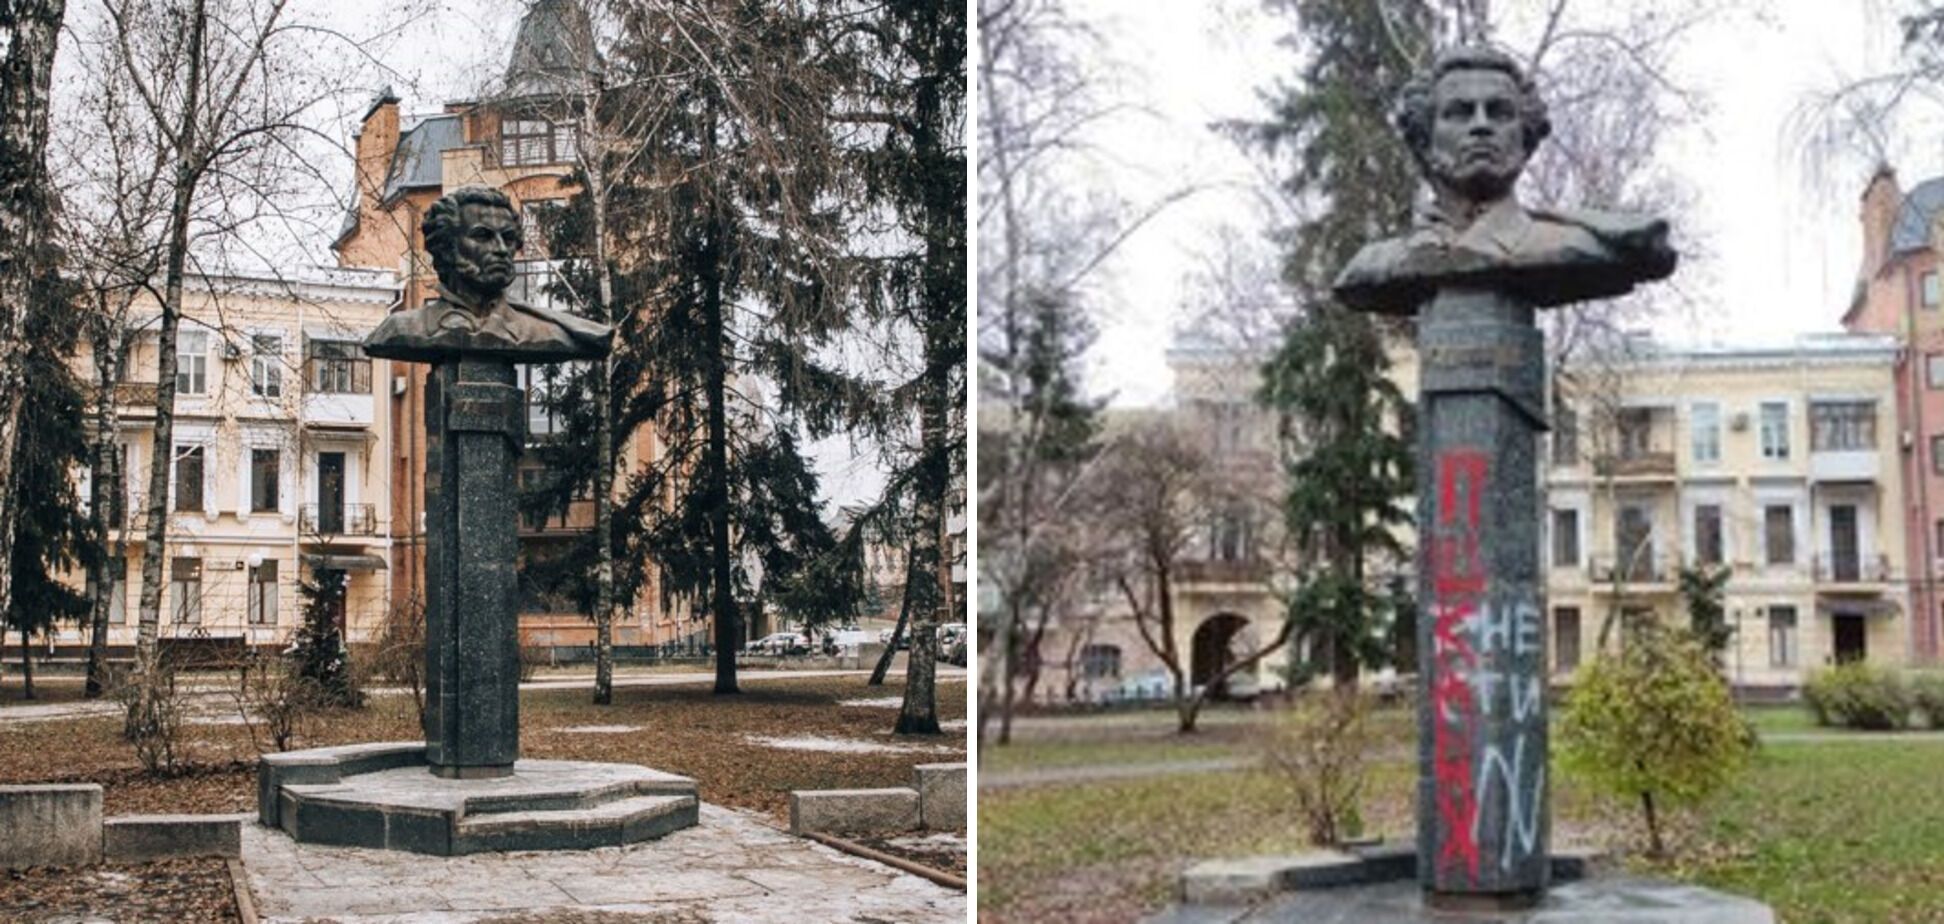 Полтавська міськрада проголосувала за знесення пам'ятників Ватутіну, Пушкіну та Зигіну